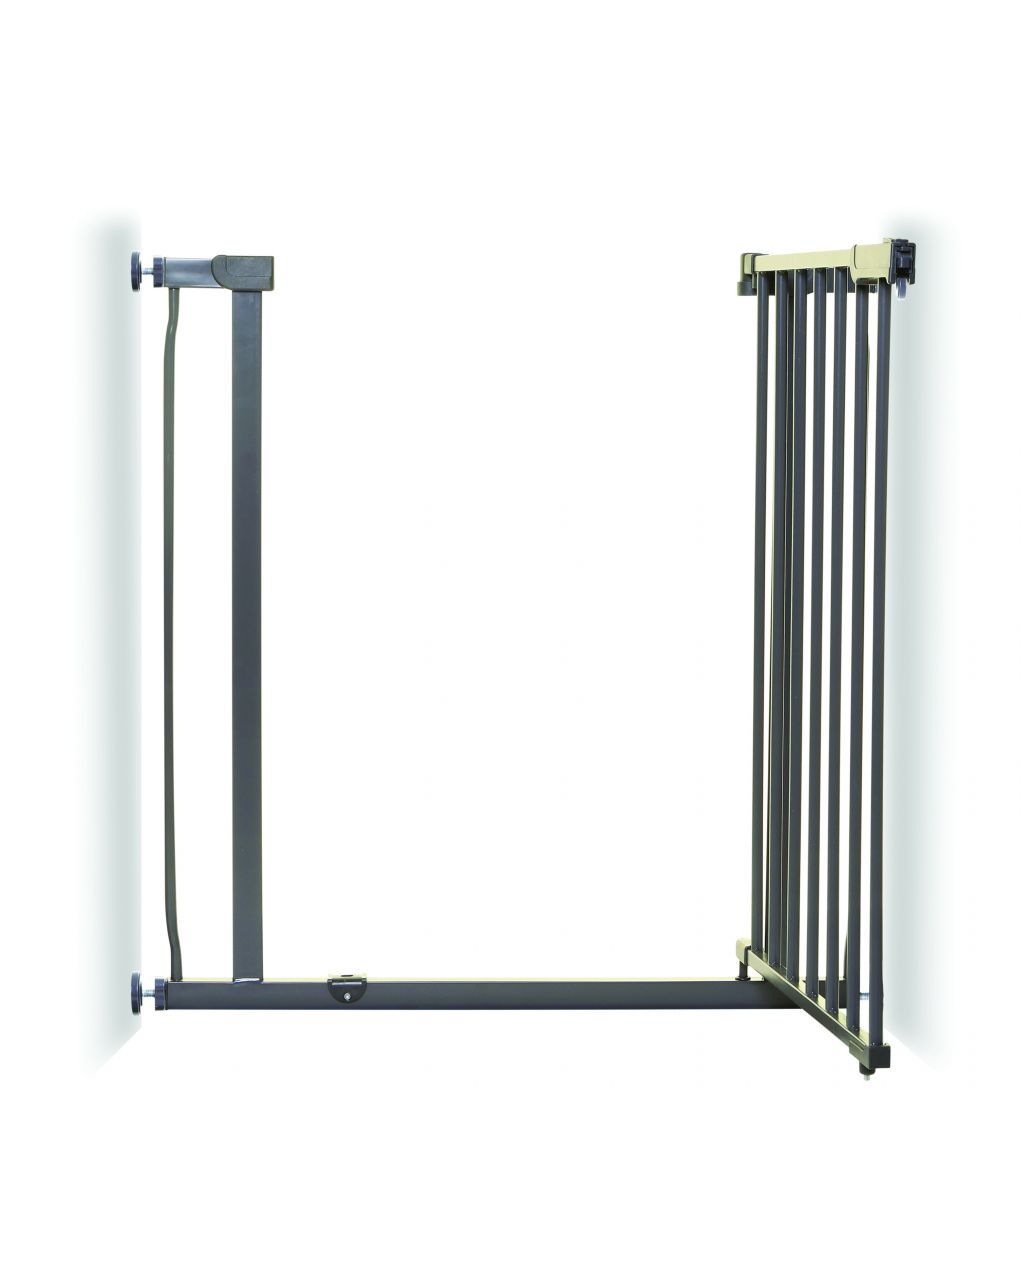 Giordani puerta ava a presión (75-81 cm) - antracita - Giordani